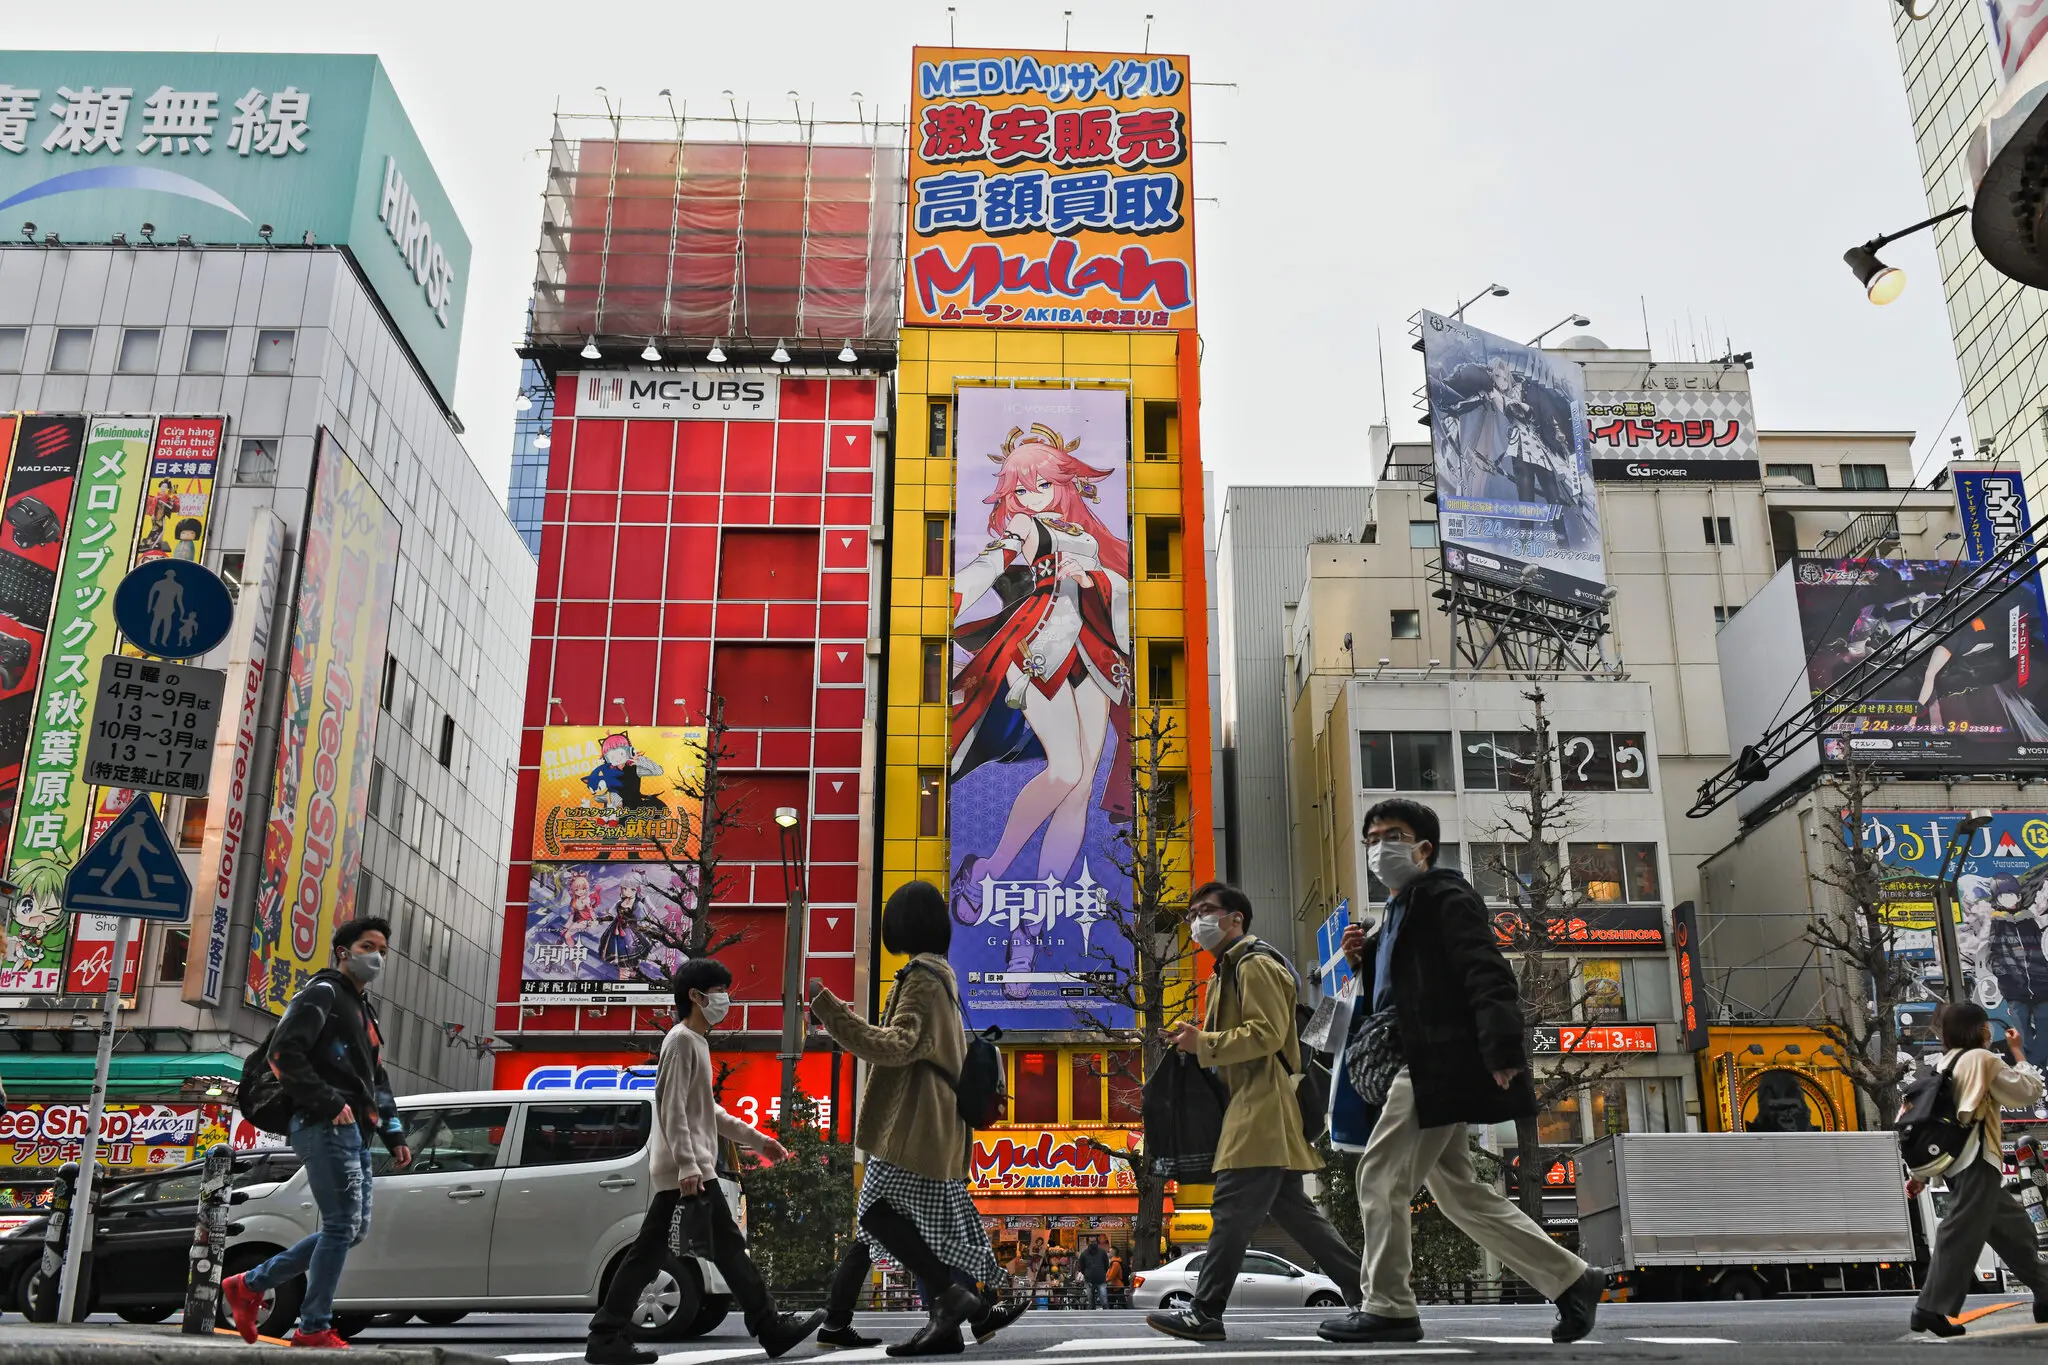 《纽约时报》发表文章大赞《原神》 认为是日本电子游戏行业面临的巨大挑战